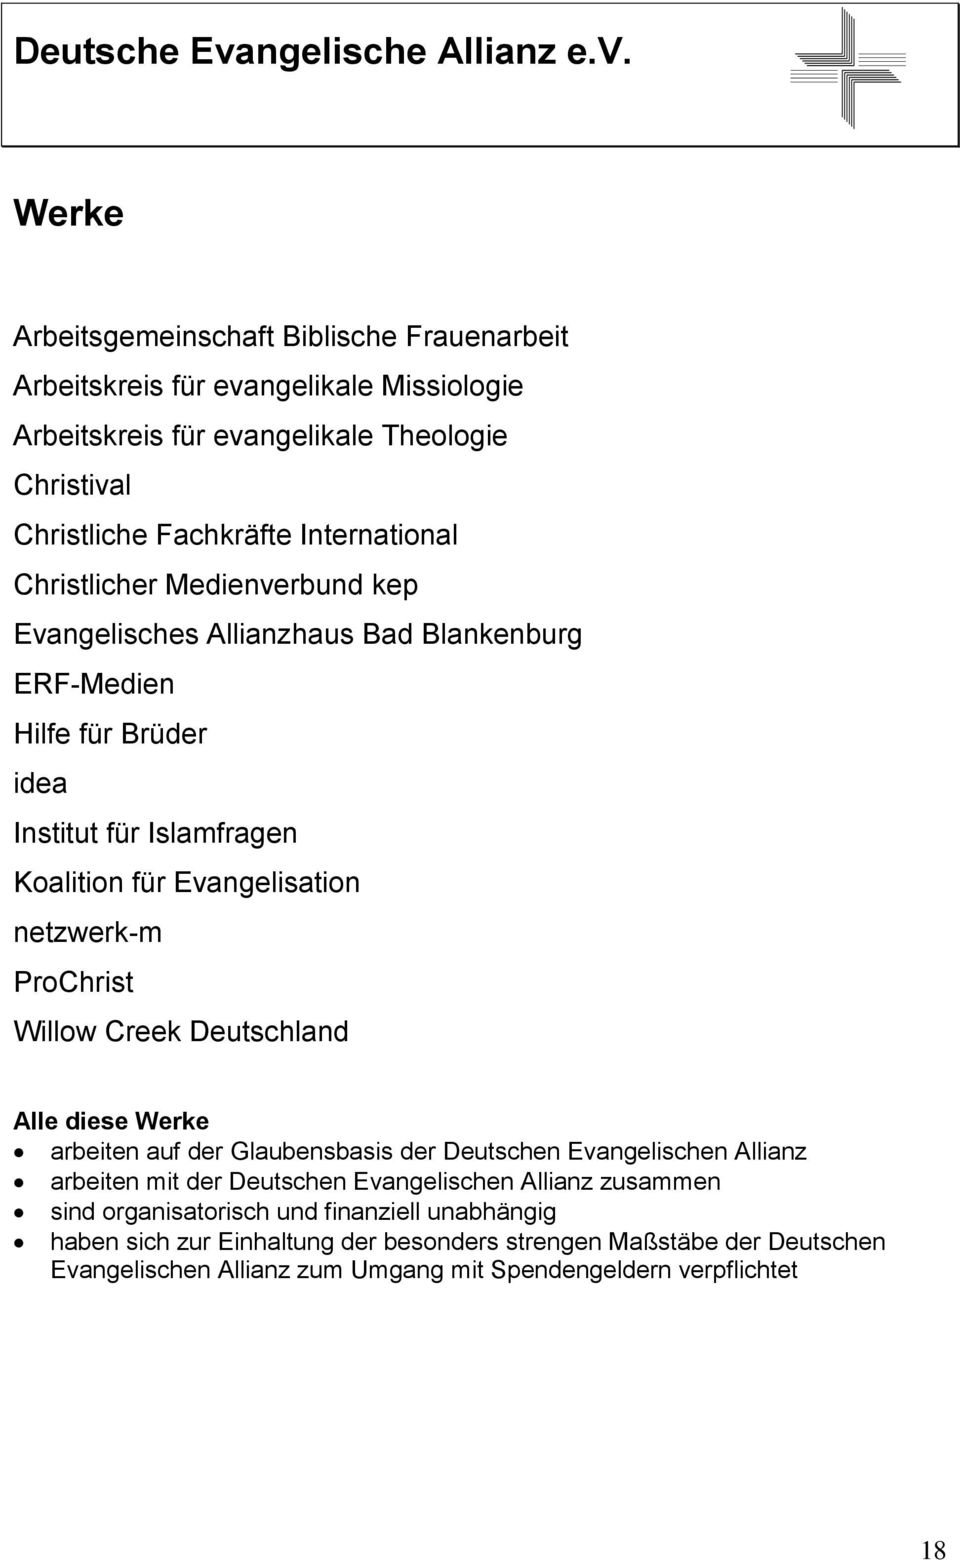 ProChrist Willow Creek Deutschland Alle diese Werke arbeiten auf der Glaubensbasis der Deutschen Evangelischen Allianz arbeiten mit der Deutschen Evangelischen Allianz zusammen